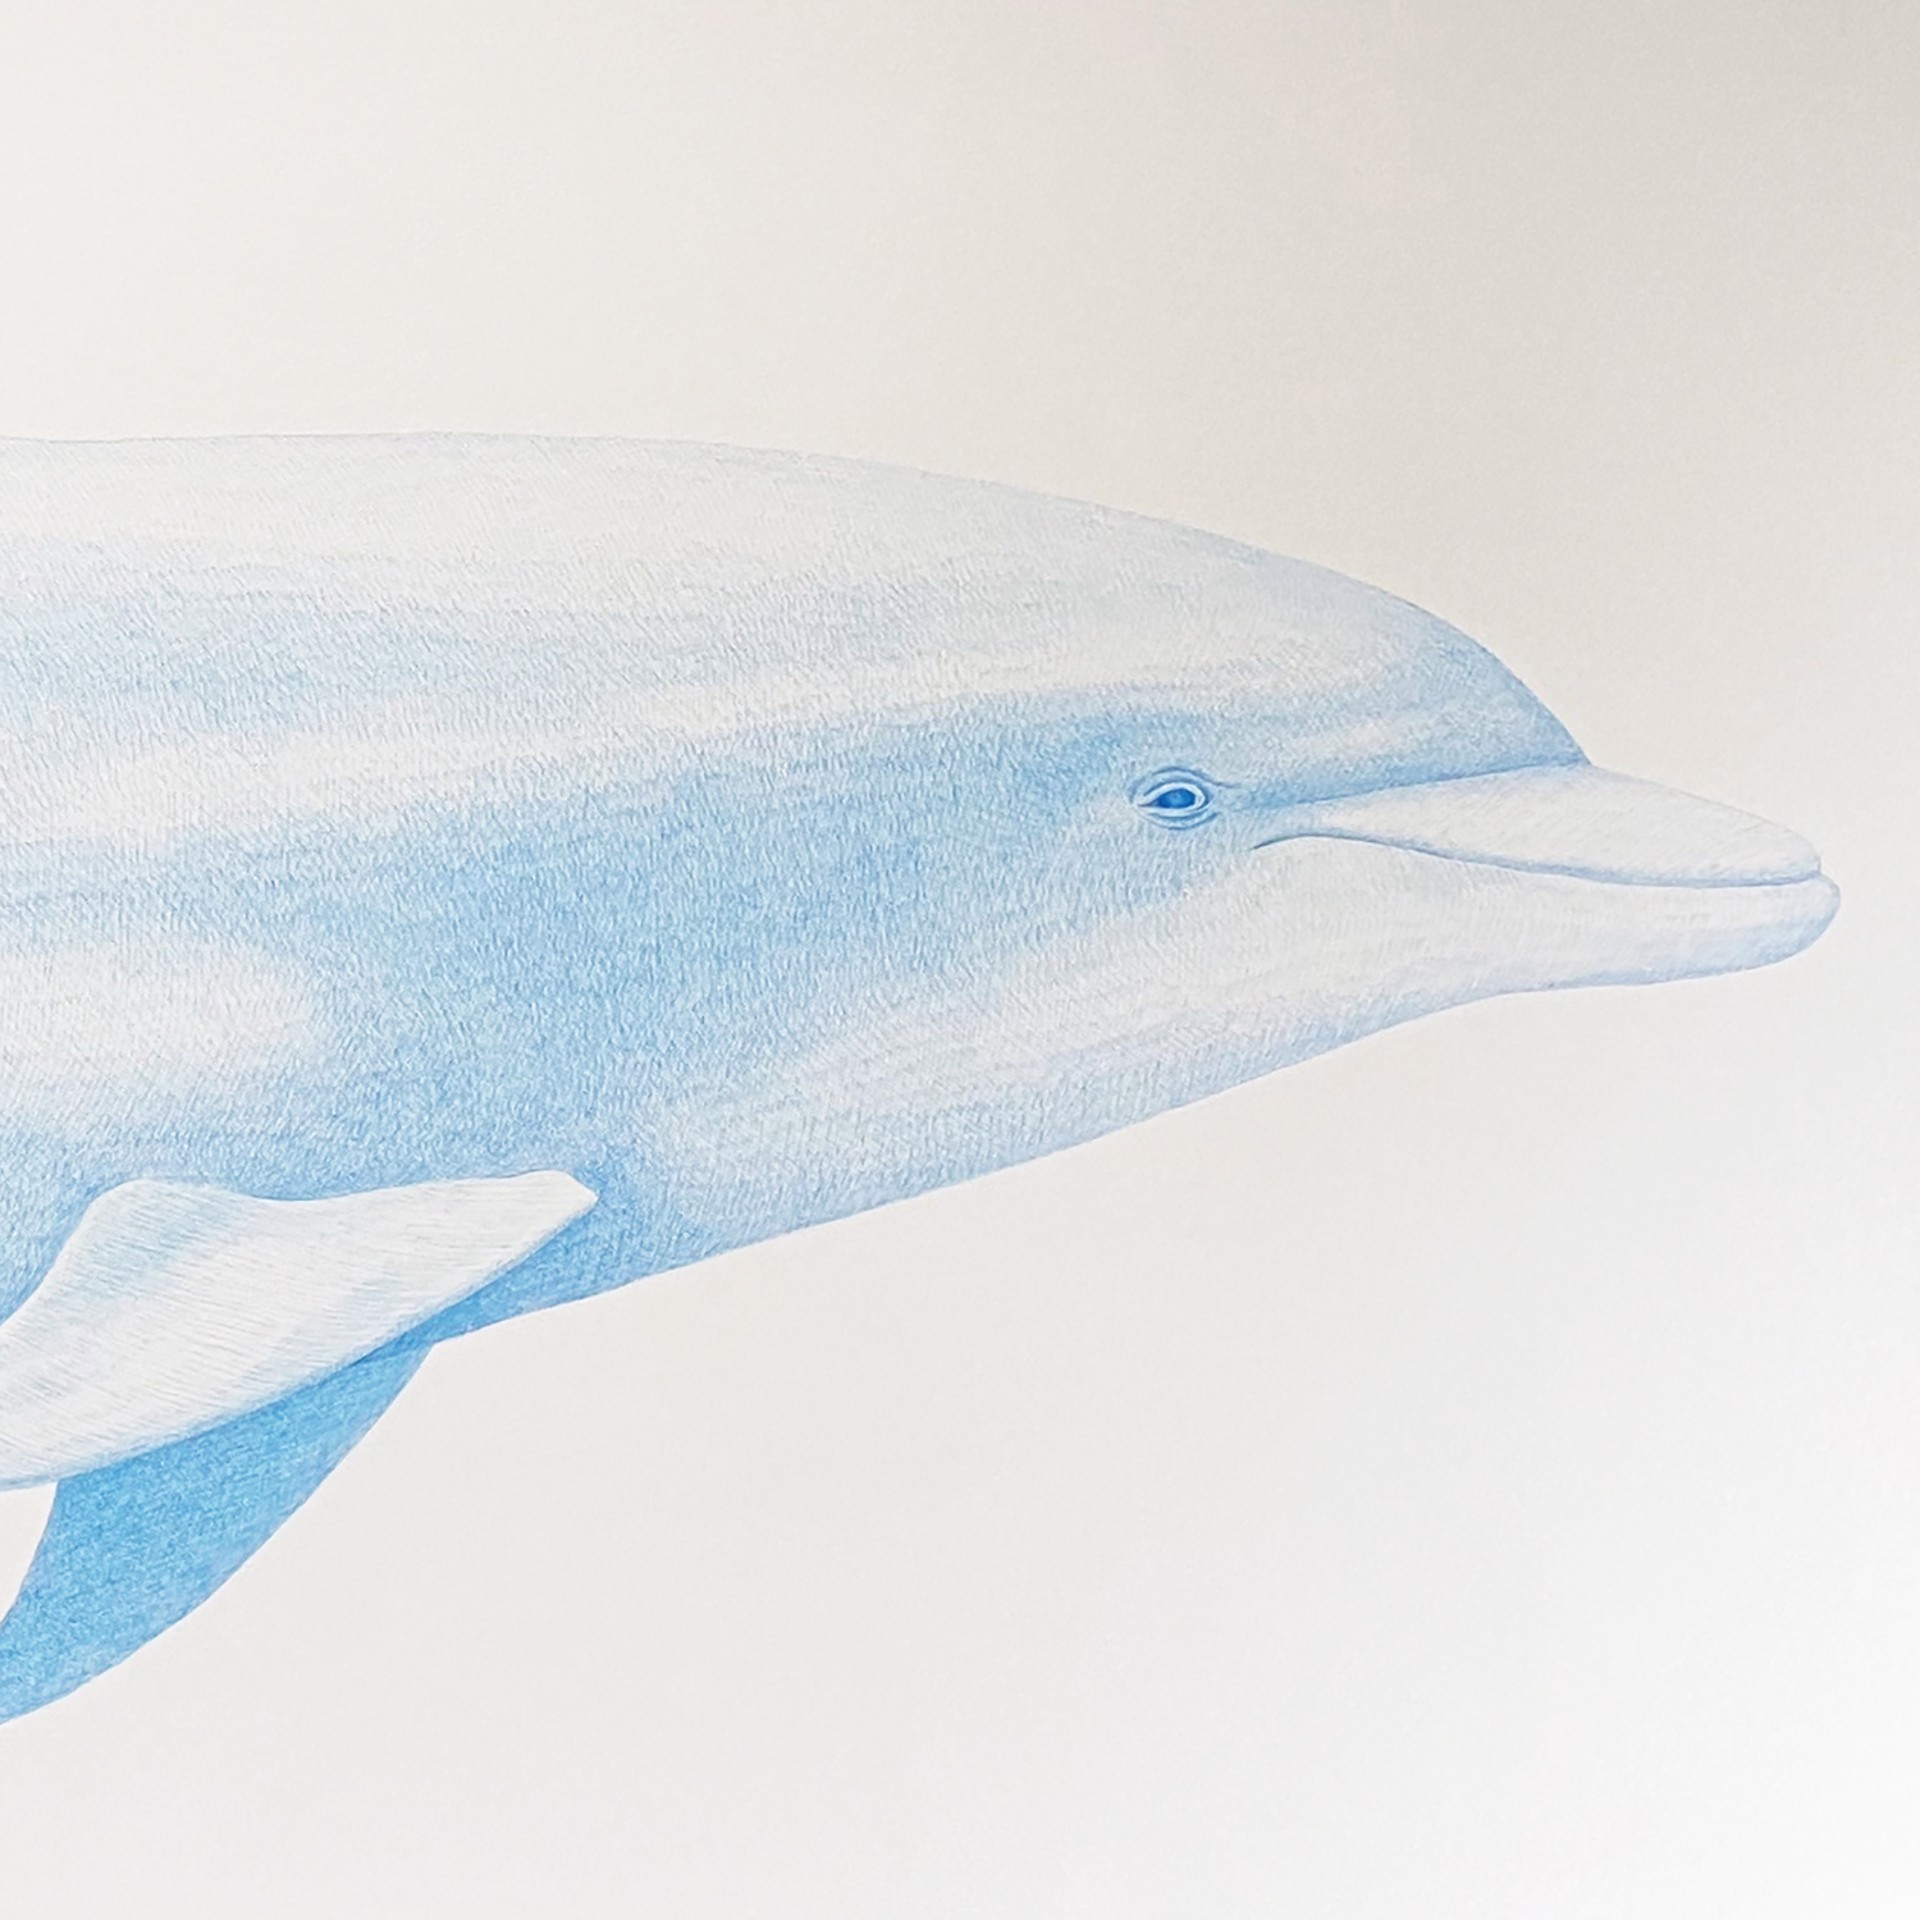 Bottlenose Dolphin by Hannah Hanlon